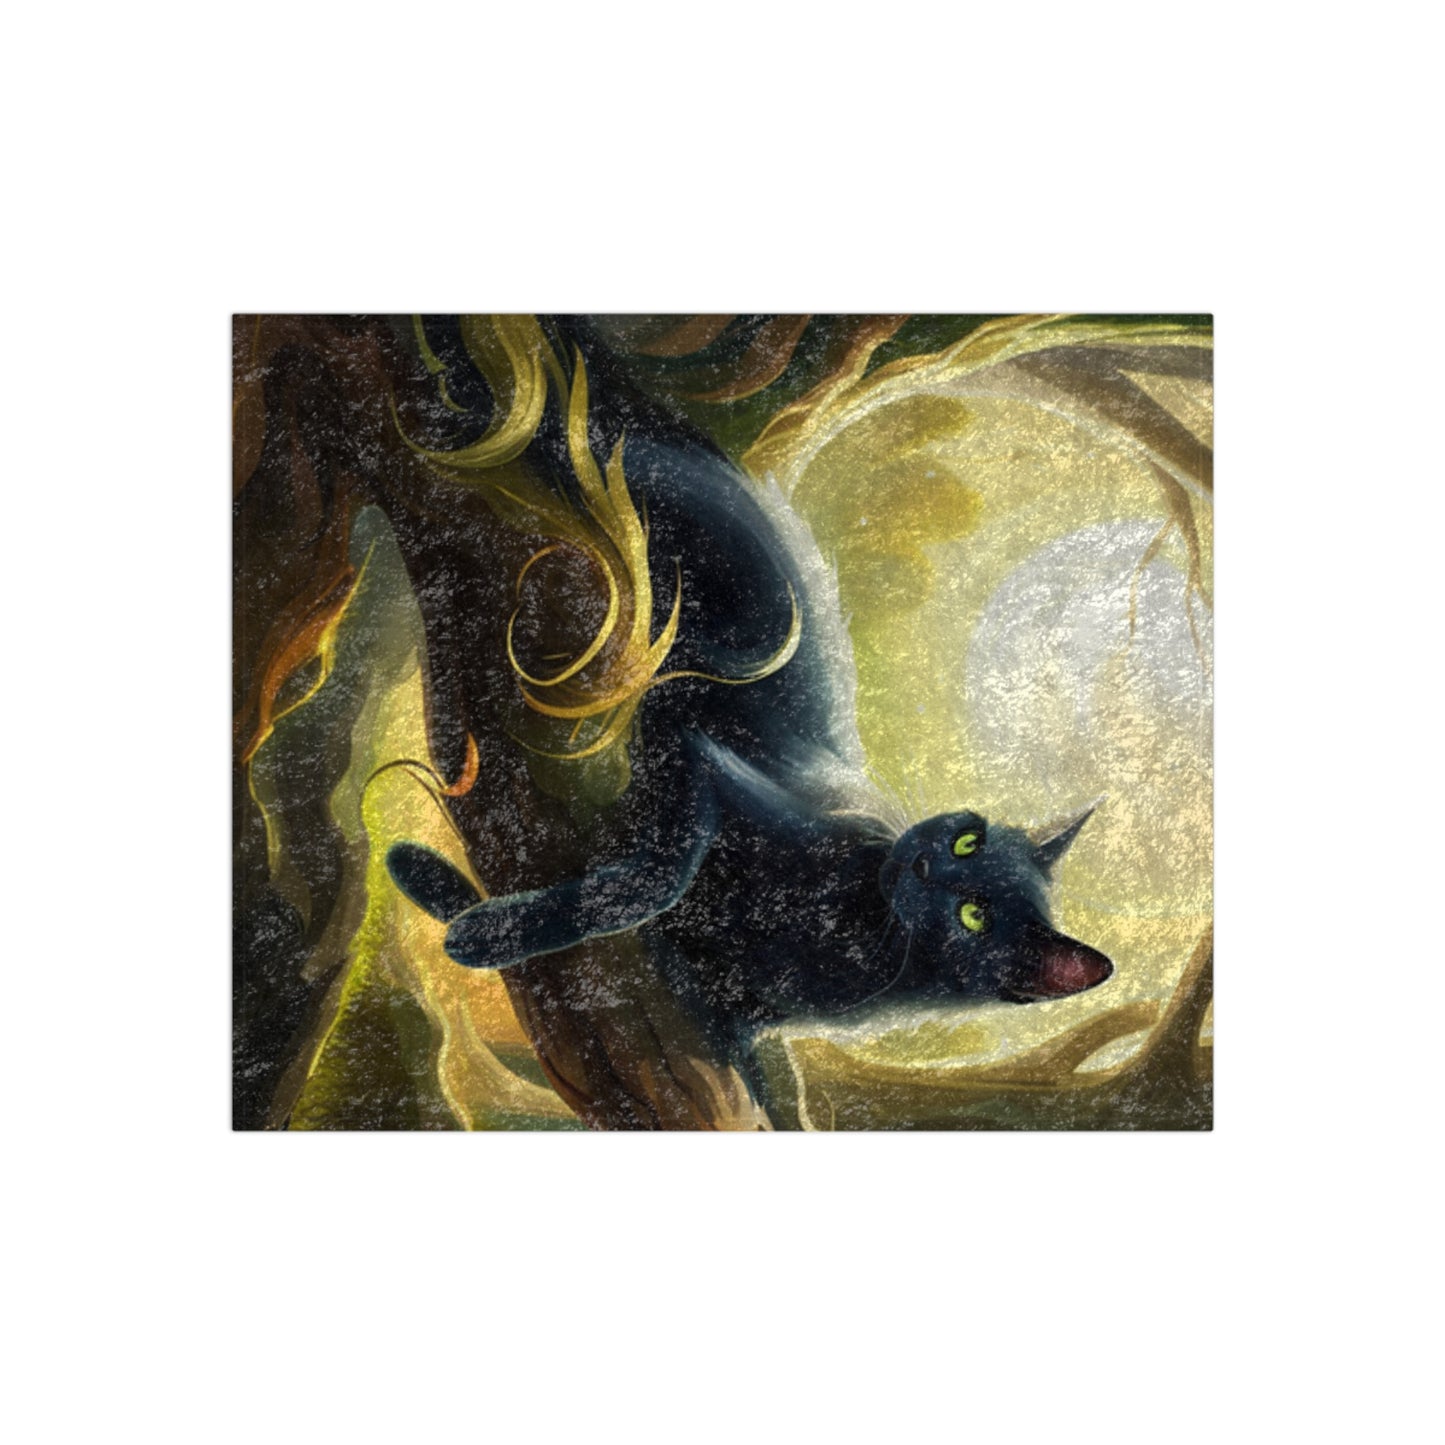 Mystical Black Cat Crushed Velvet Blanket with Shiny Finish